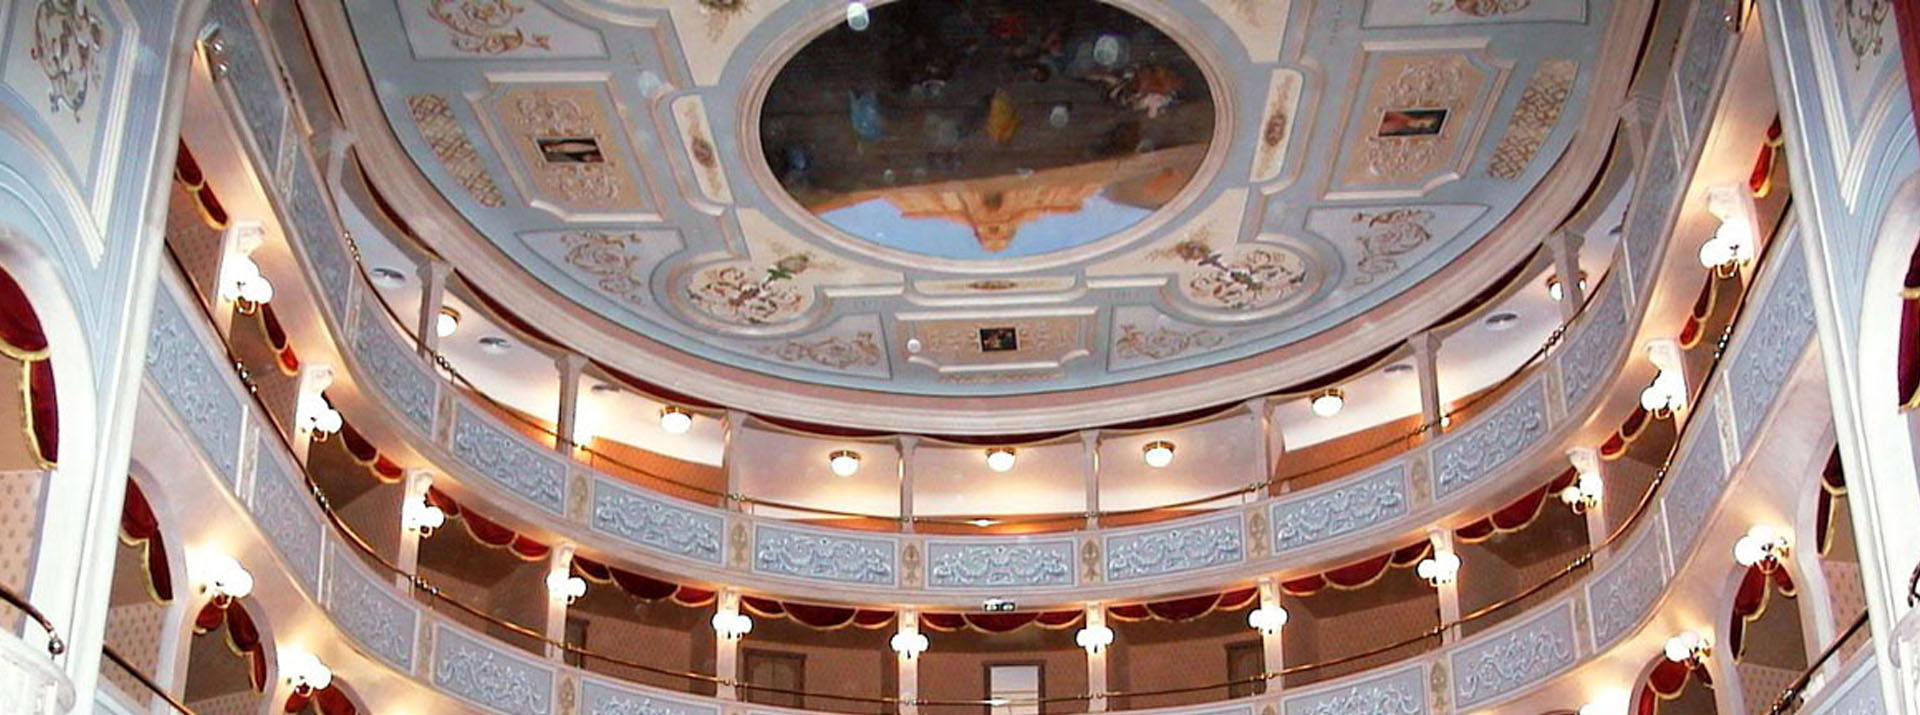 Restauro del teatro Garibaldi a cura di Boero